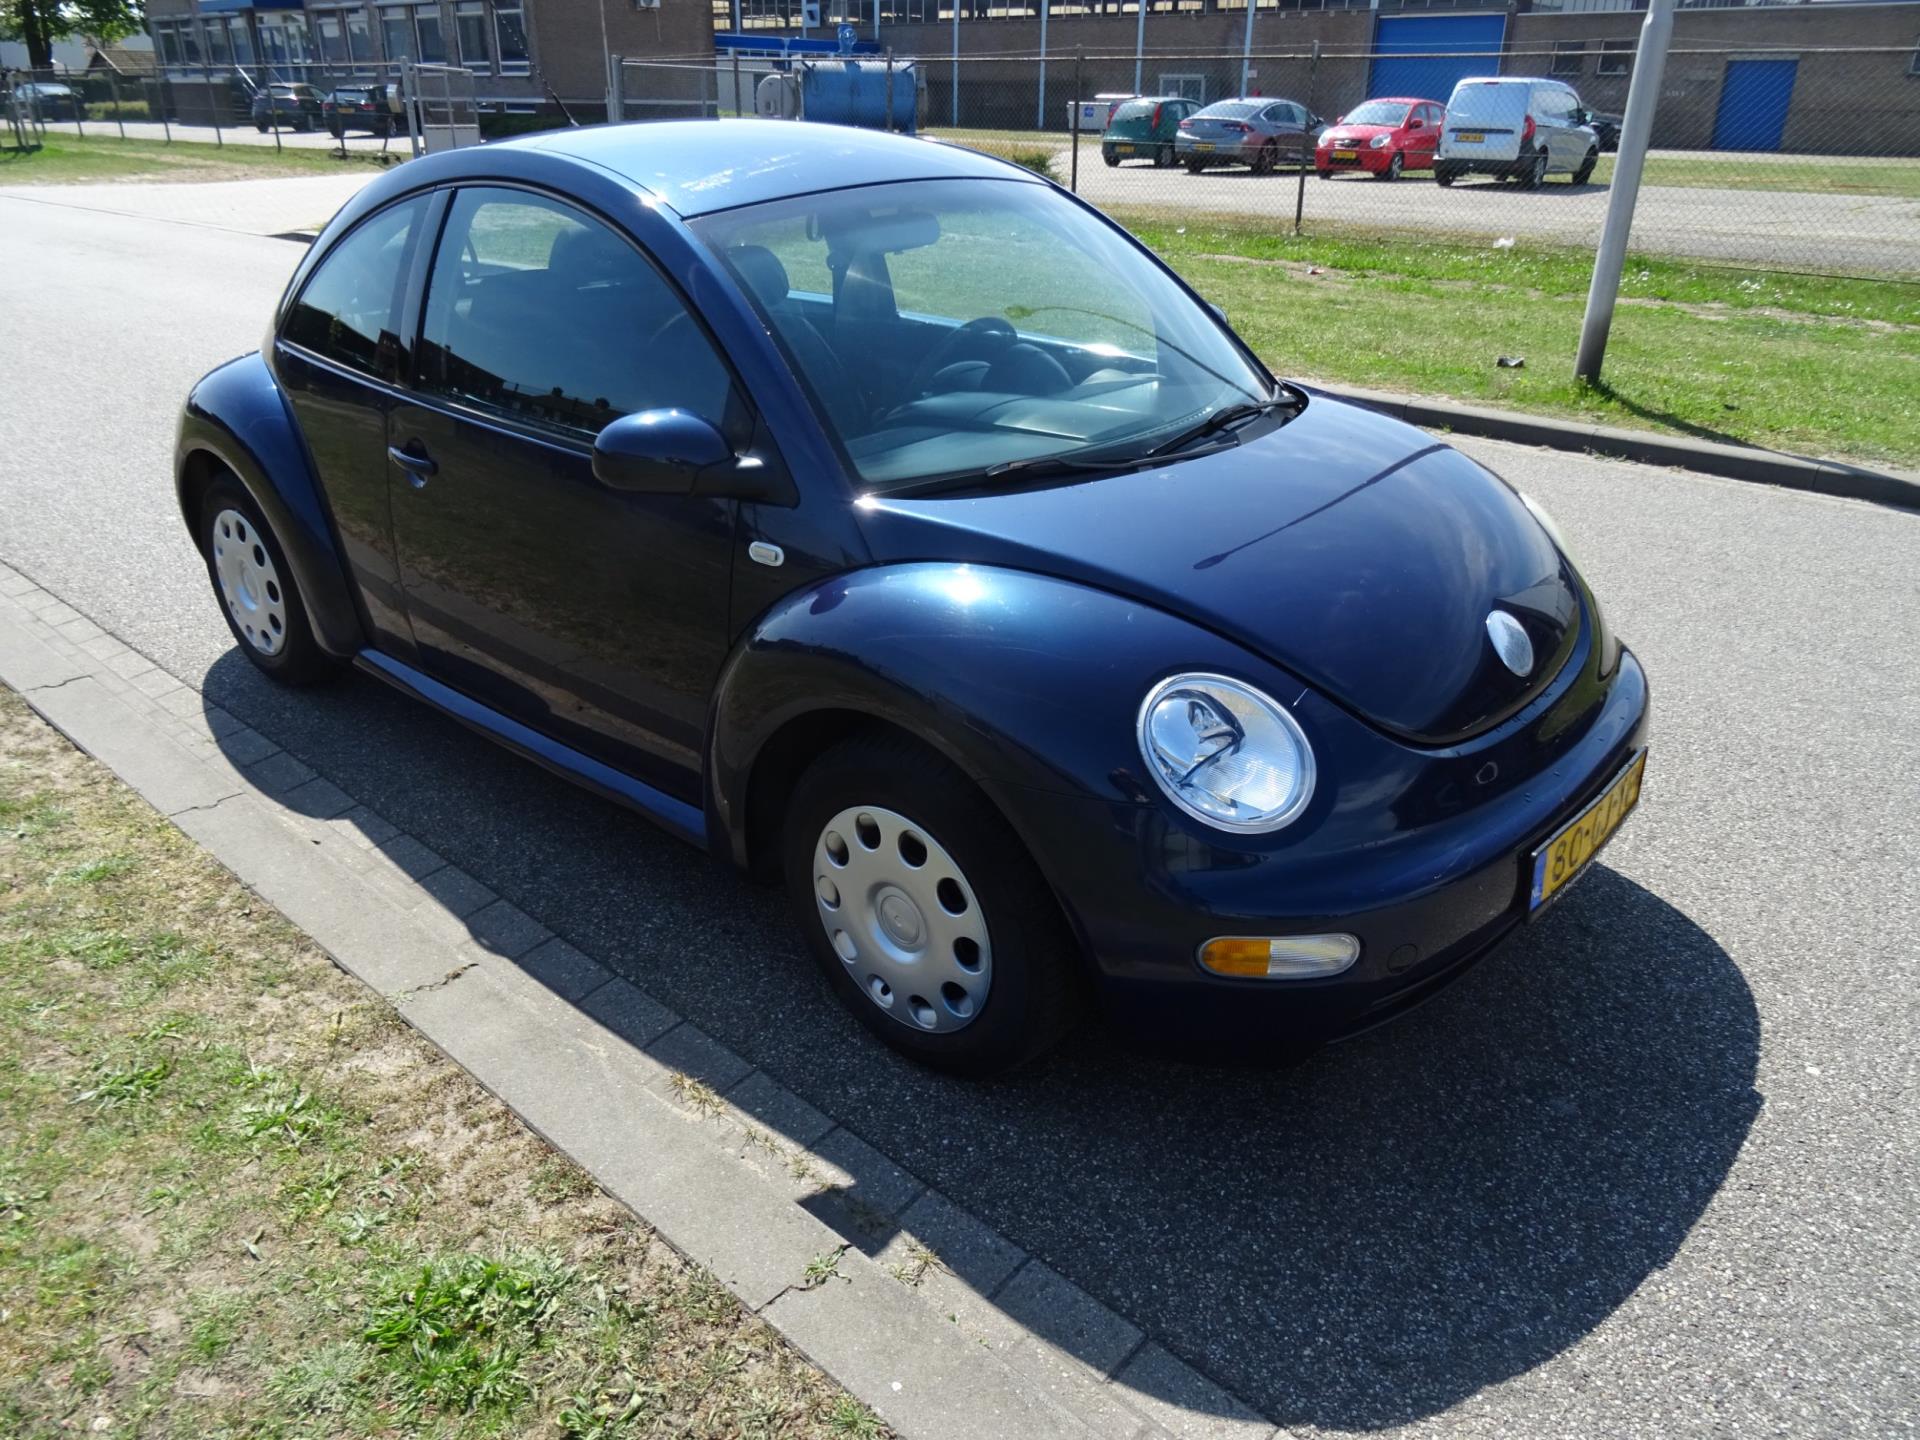 volkswagen-new-beetle-image8.jpg